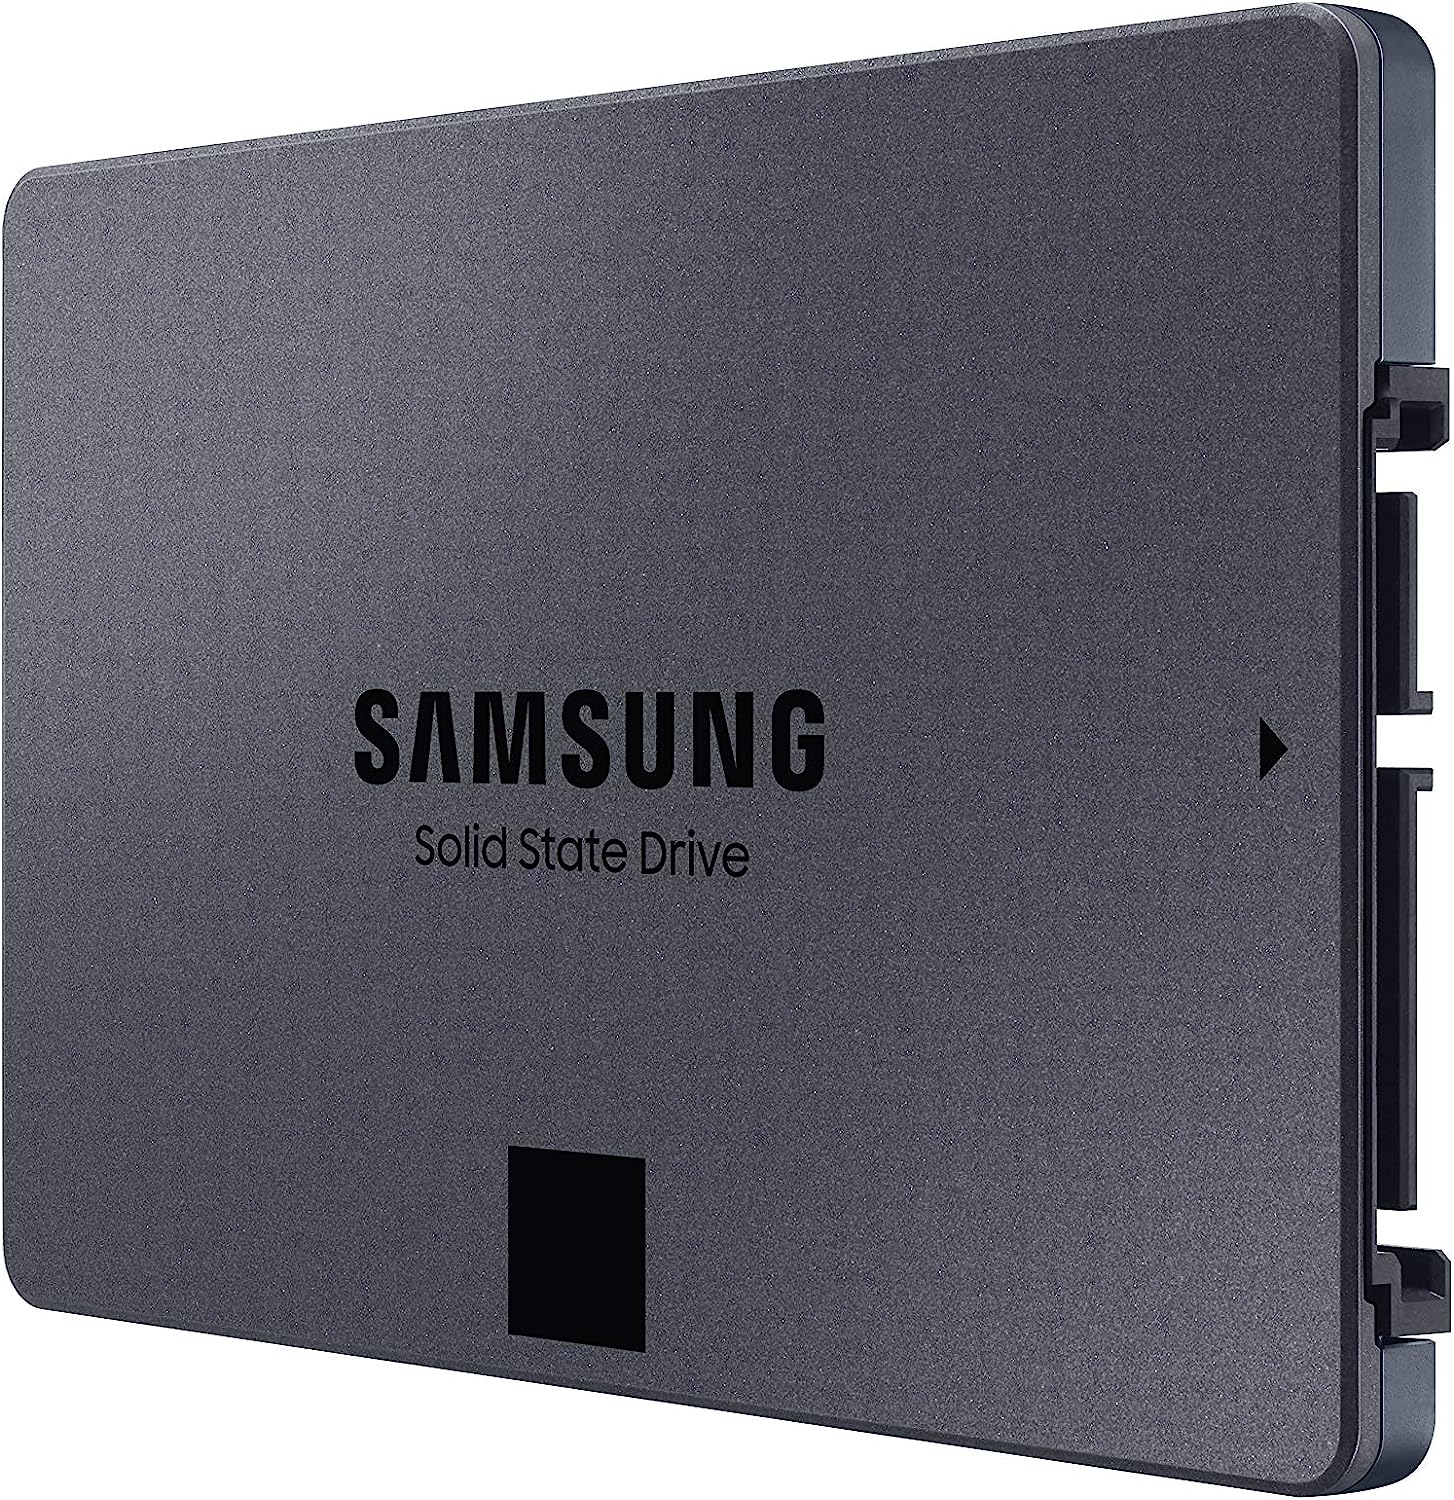 SAMSUNG 870 QVO 8 TB SATA 2.5 Inch Internal Solid State Drive SSD MZ 77Q8T0, Black, MZ-77Q8T0BW, Samsung T5